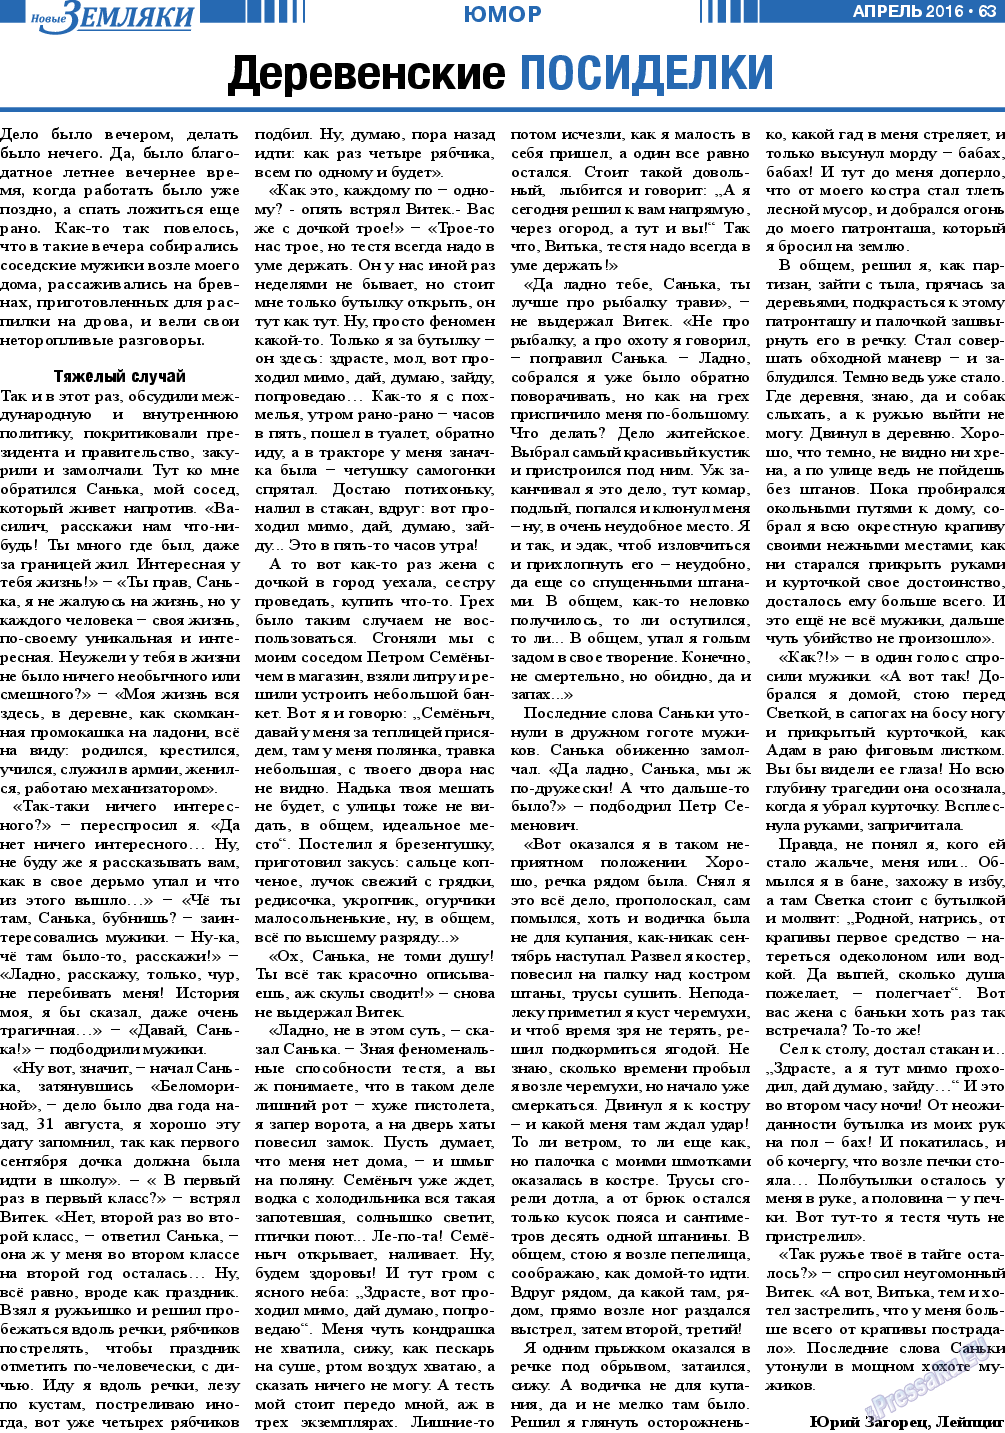 Новые Земляки, газета. 2016 №4 стр.63